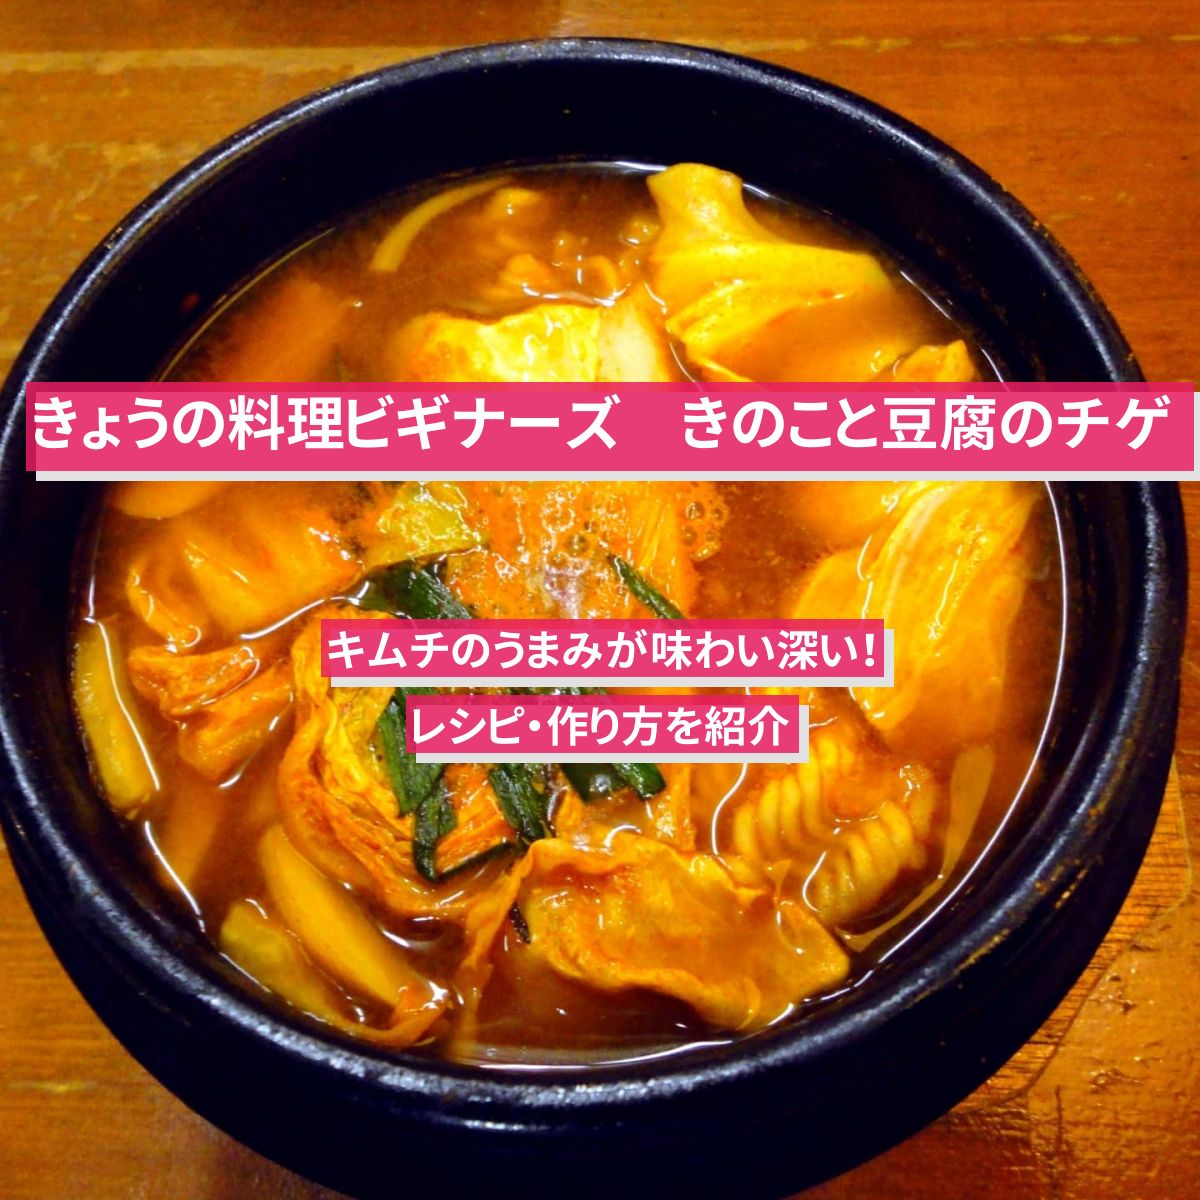 【きょうの料理ビギナーズ】『きのこと豆腐のチゲ』レシピ・作り方を紹介